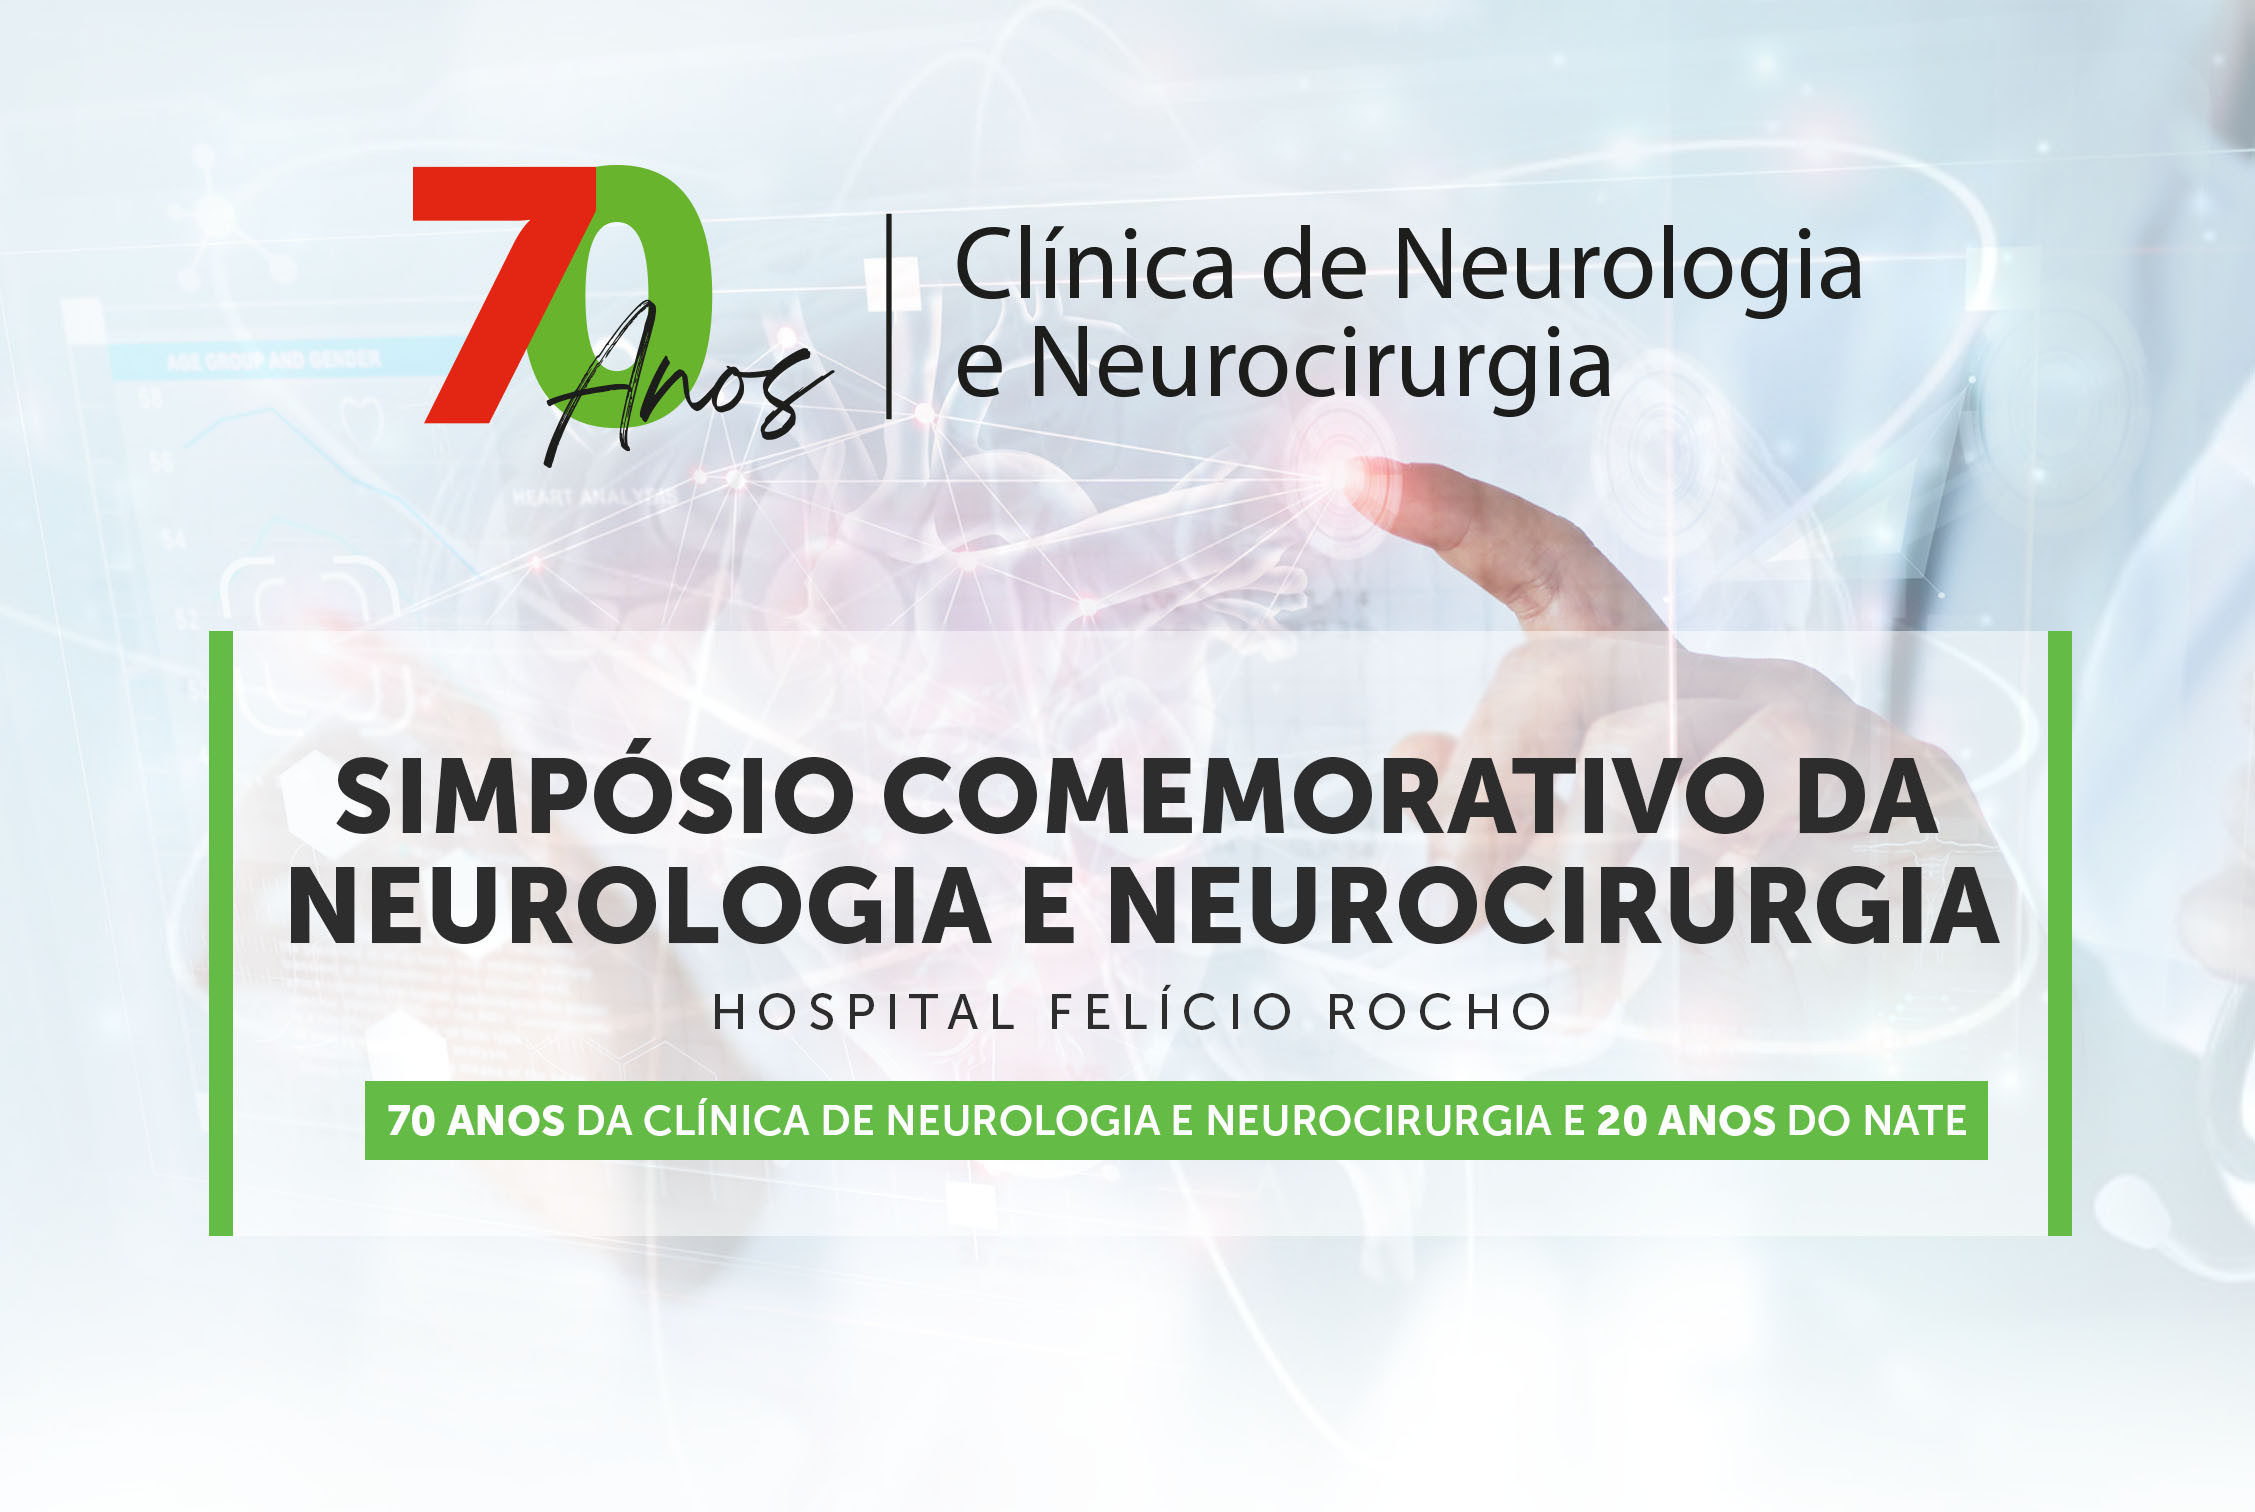 Simpósio Comemorativo da Neurologia e Neurocirurgia do Hospital Felício Rocho